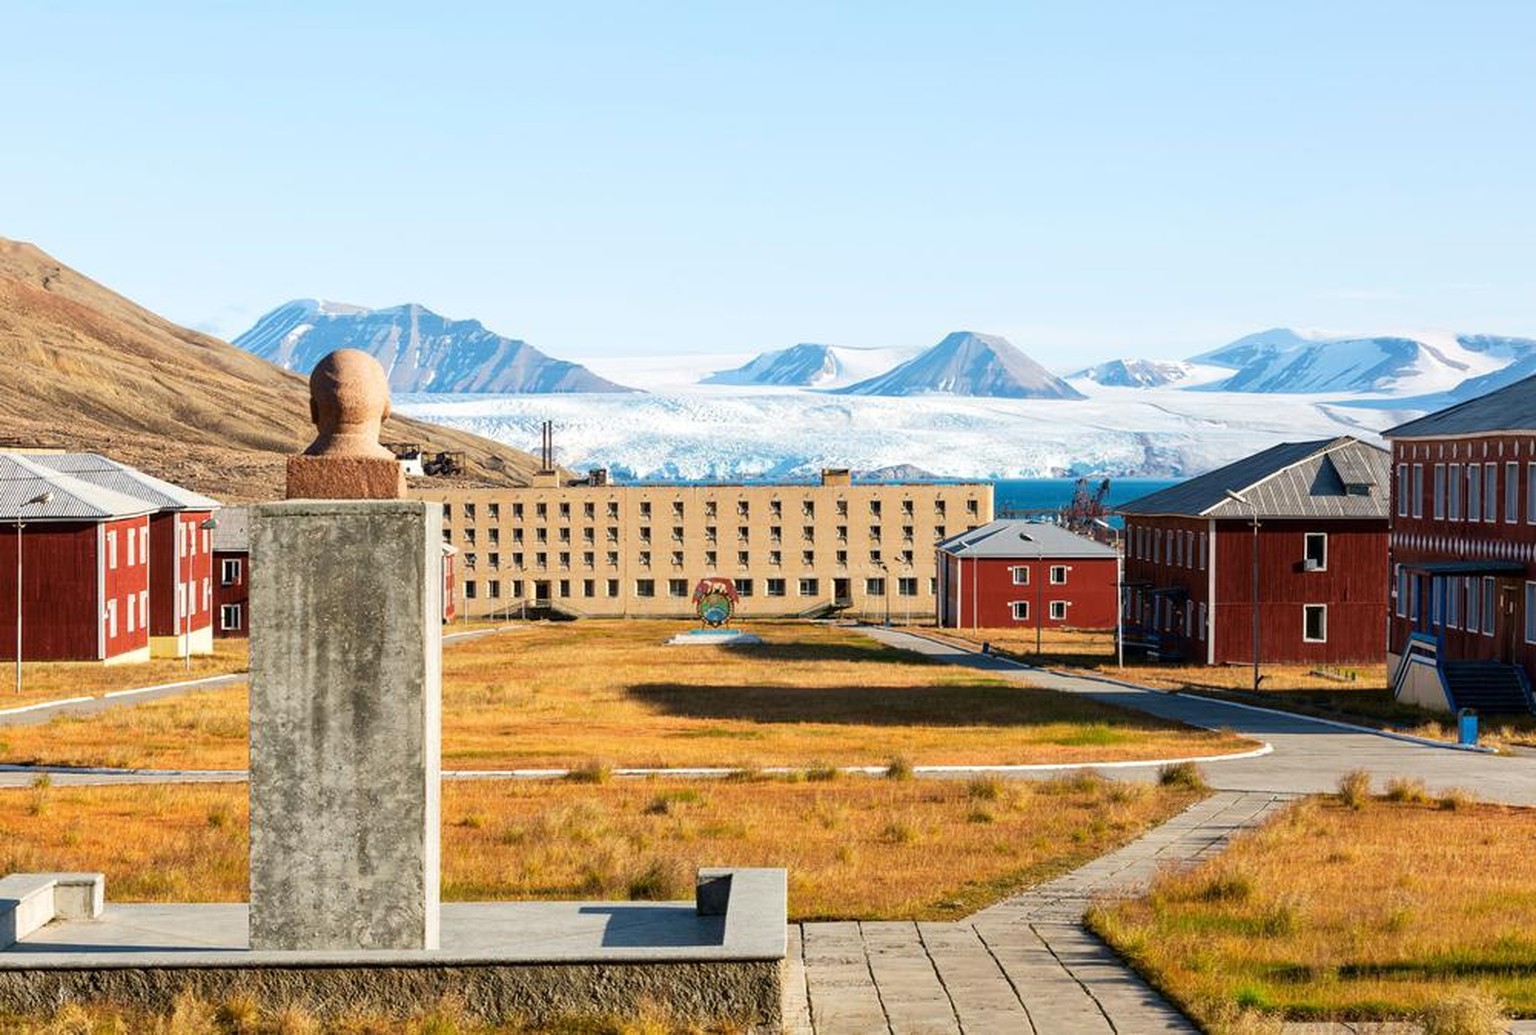 Pyramiden se situe en Norvège et était autrefois une colonie minière et un campement soviétique. Inactive depuis 1998, un hôtel dédié organise des visites officielles.